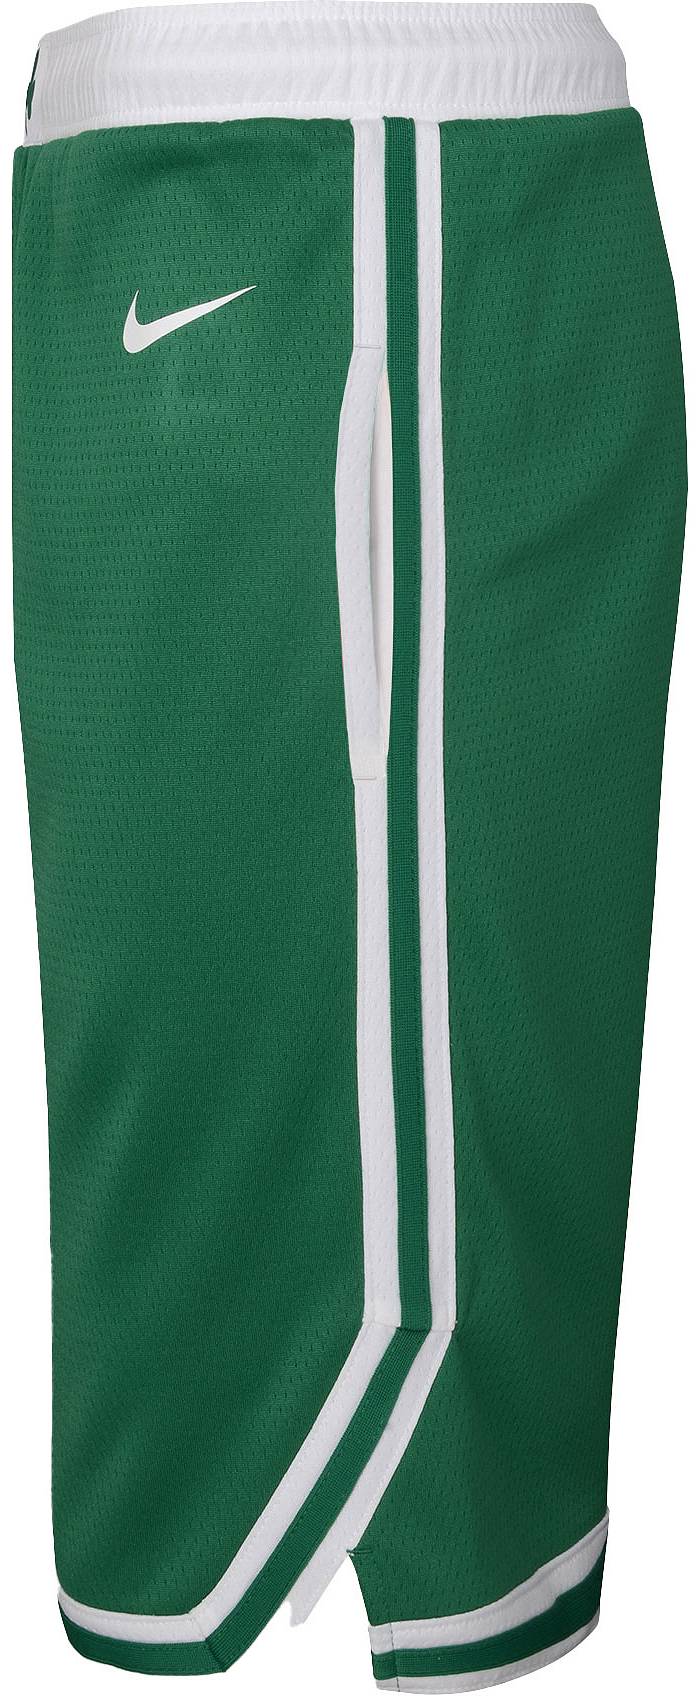 Boston Celtics Courtside Men's Nike Dri-FIT NBA Graphic Shorts